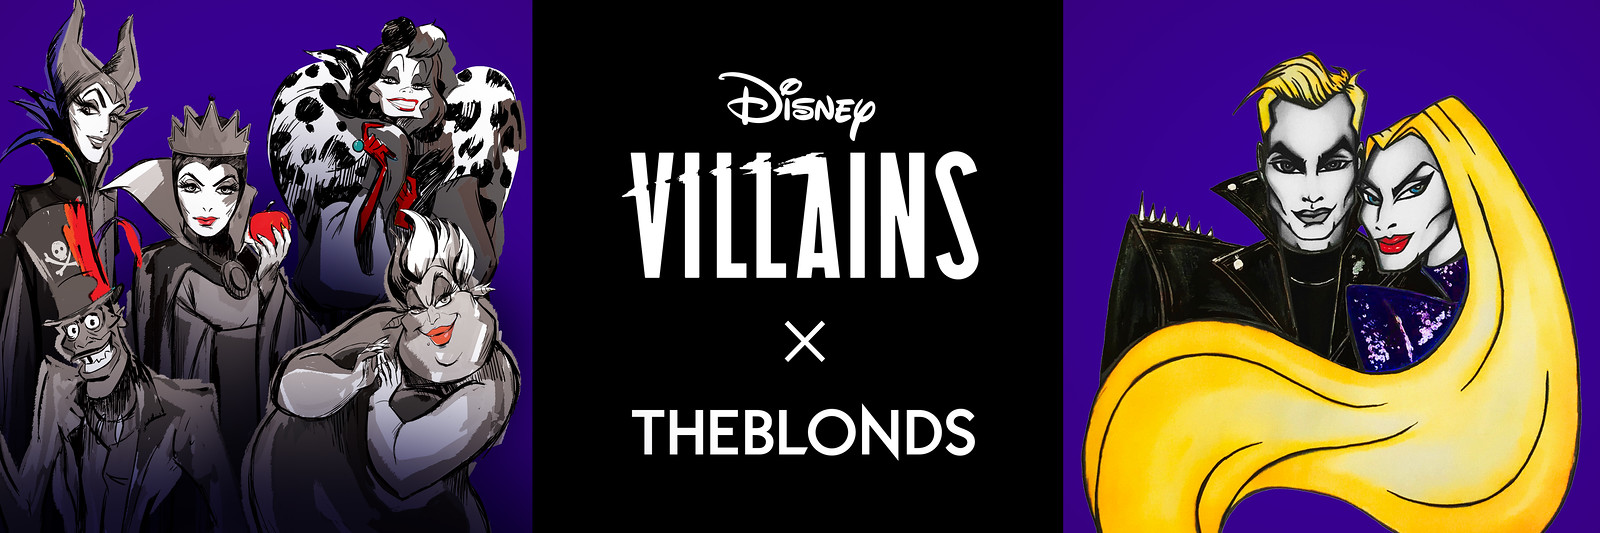 Disney Villains x THE BLONDS Collaboration